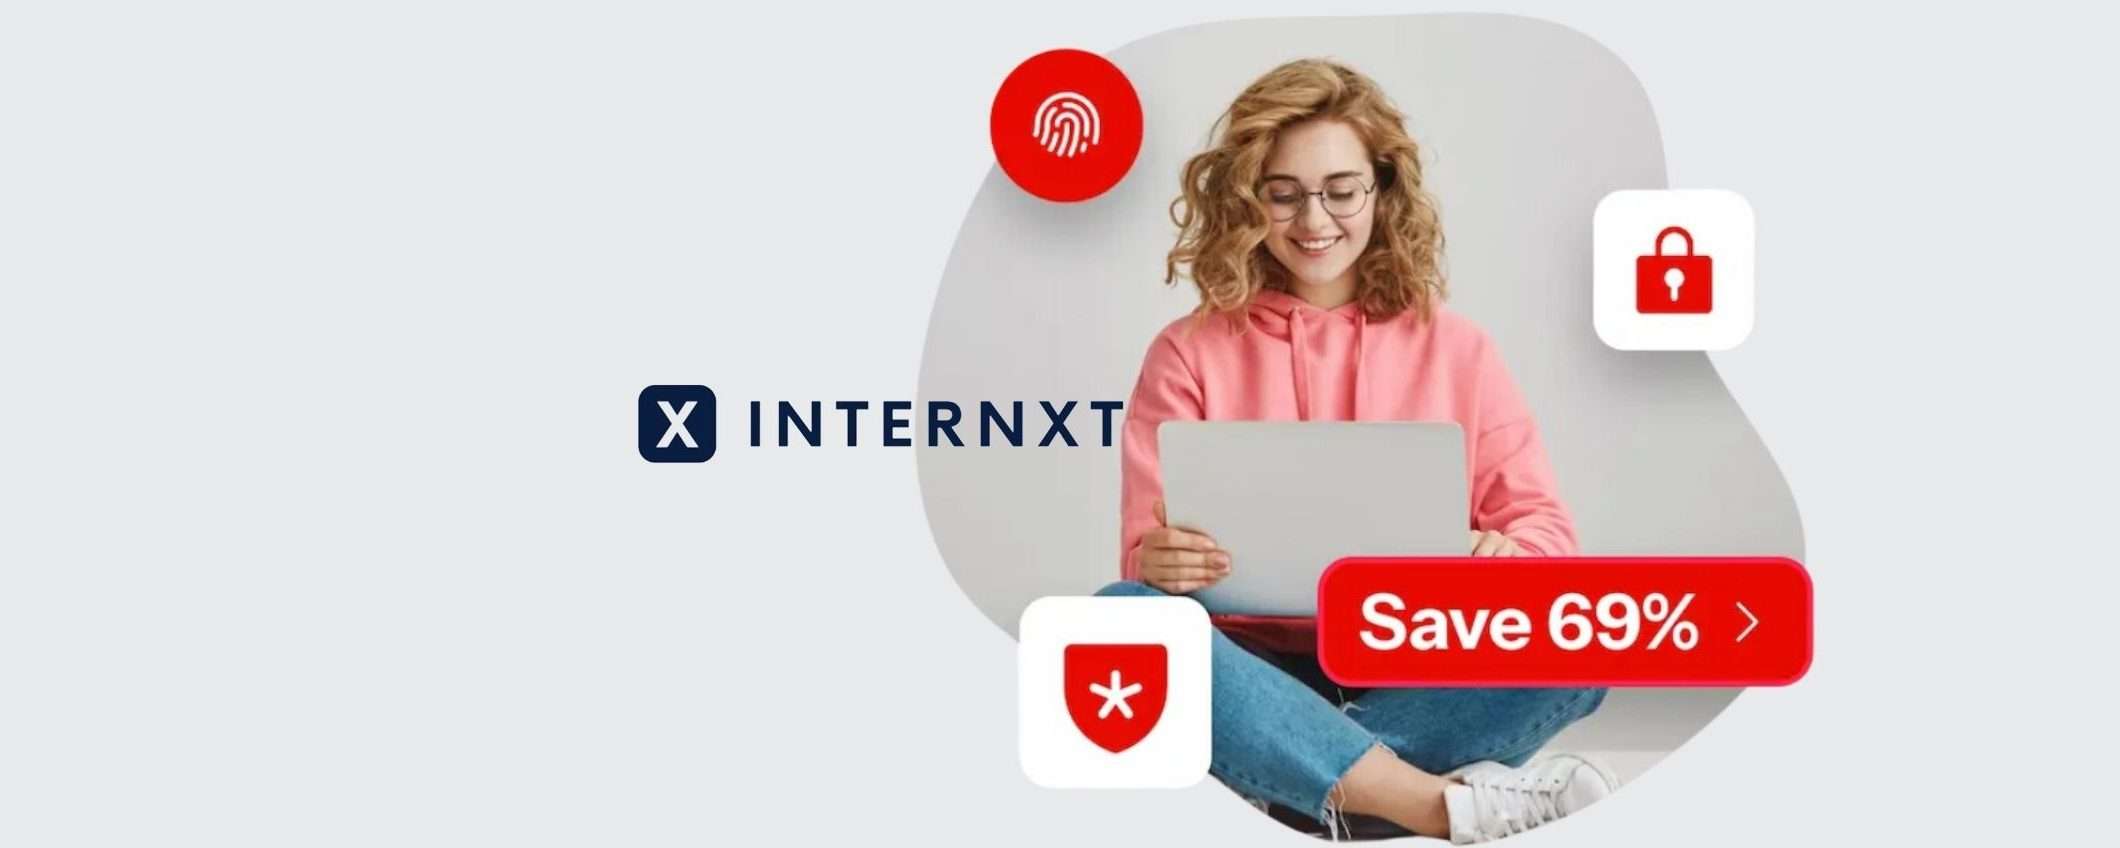 Internxt: scopri i piani mensili e annuali scontati del 69%